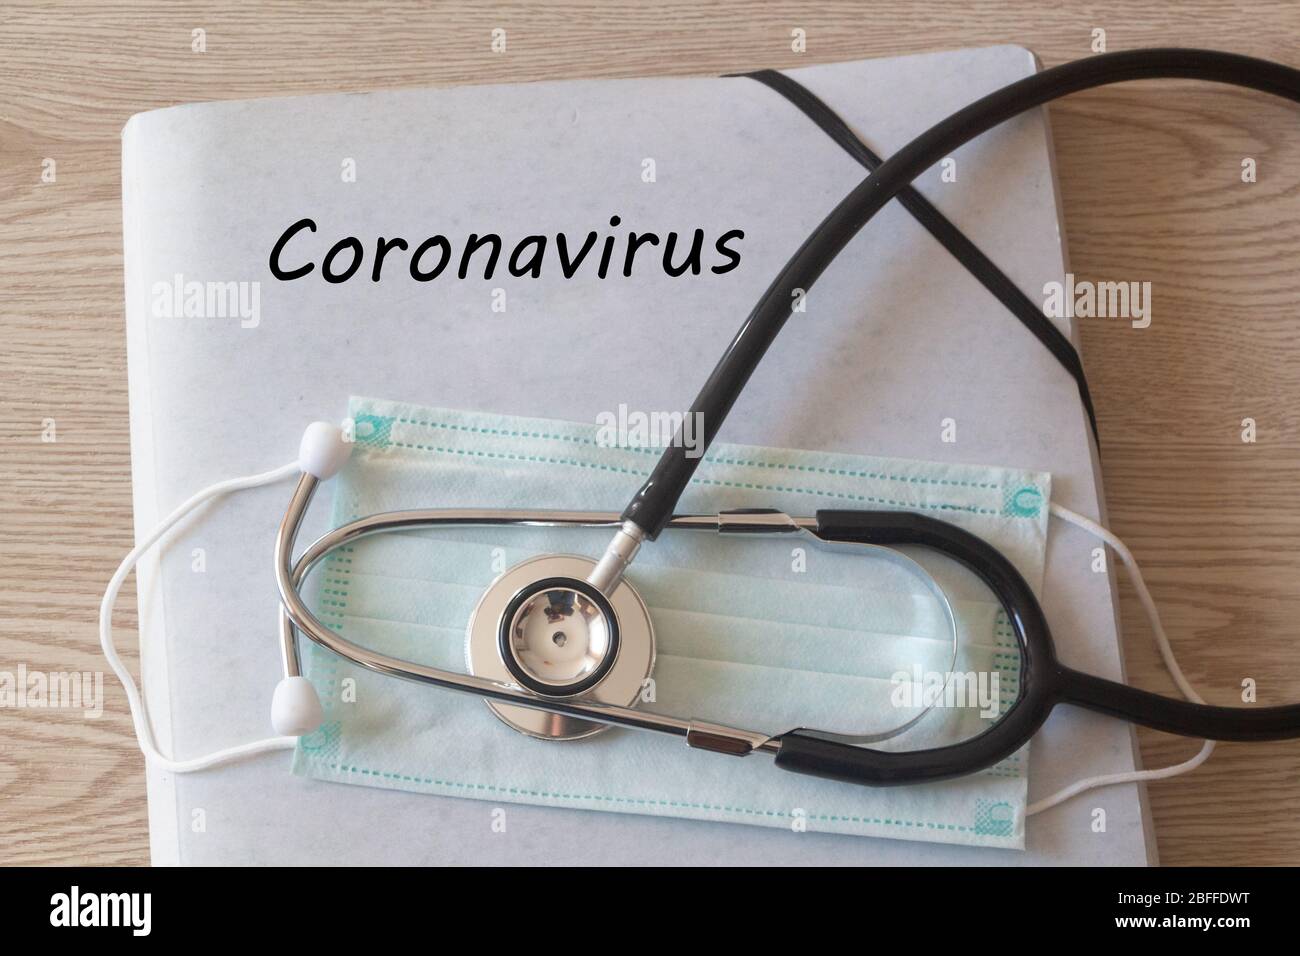 Dossier avec coronavirus écrit sur lui, médical, masque et stéthoscope Banque D'Images